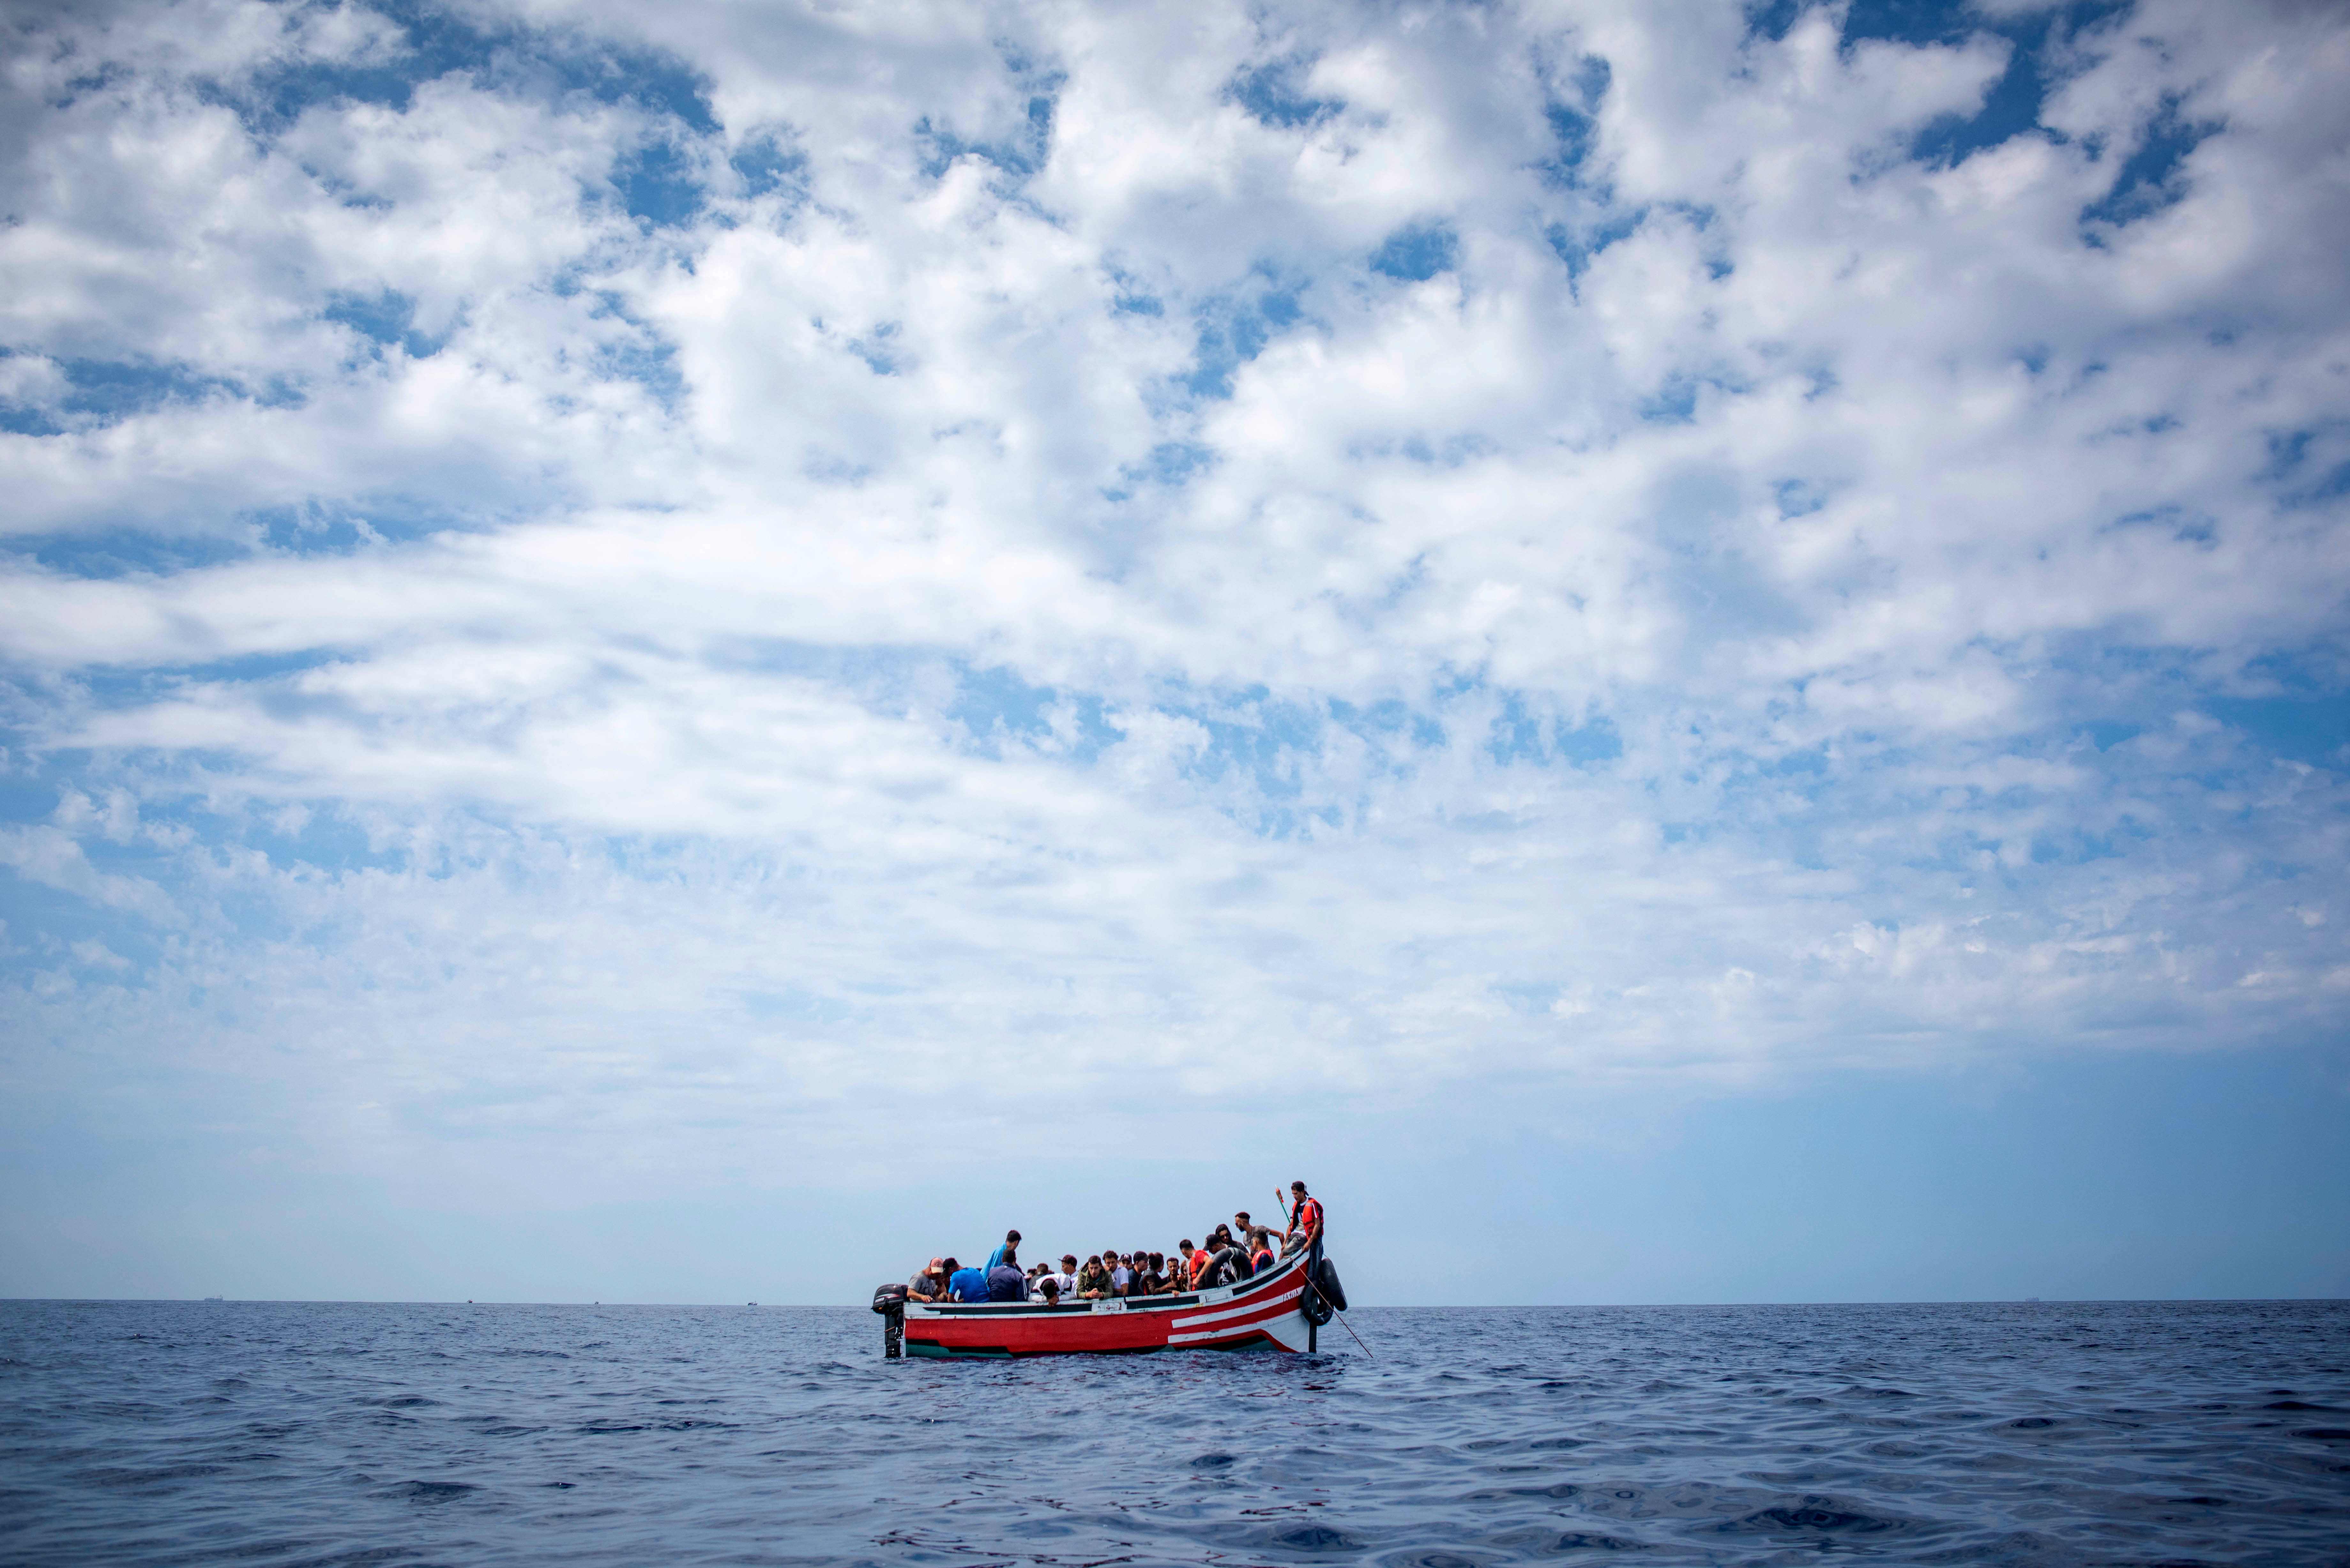  قارب المهاجرين اثناء الابحار 